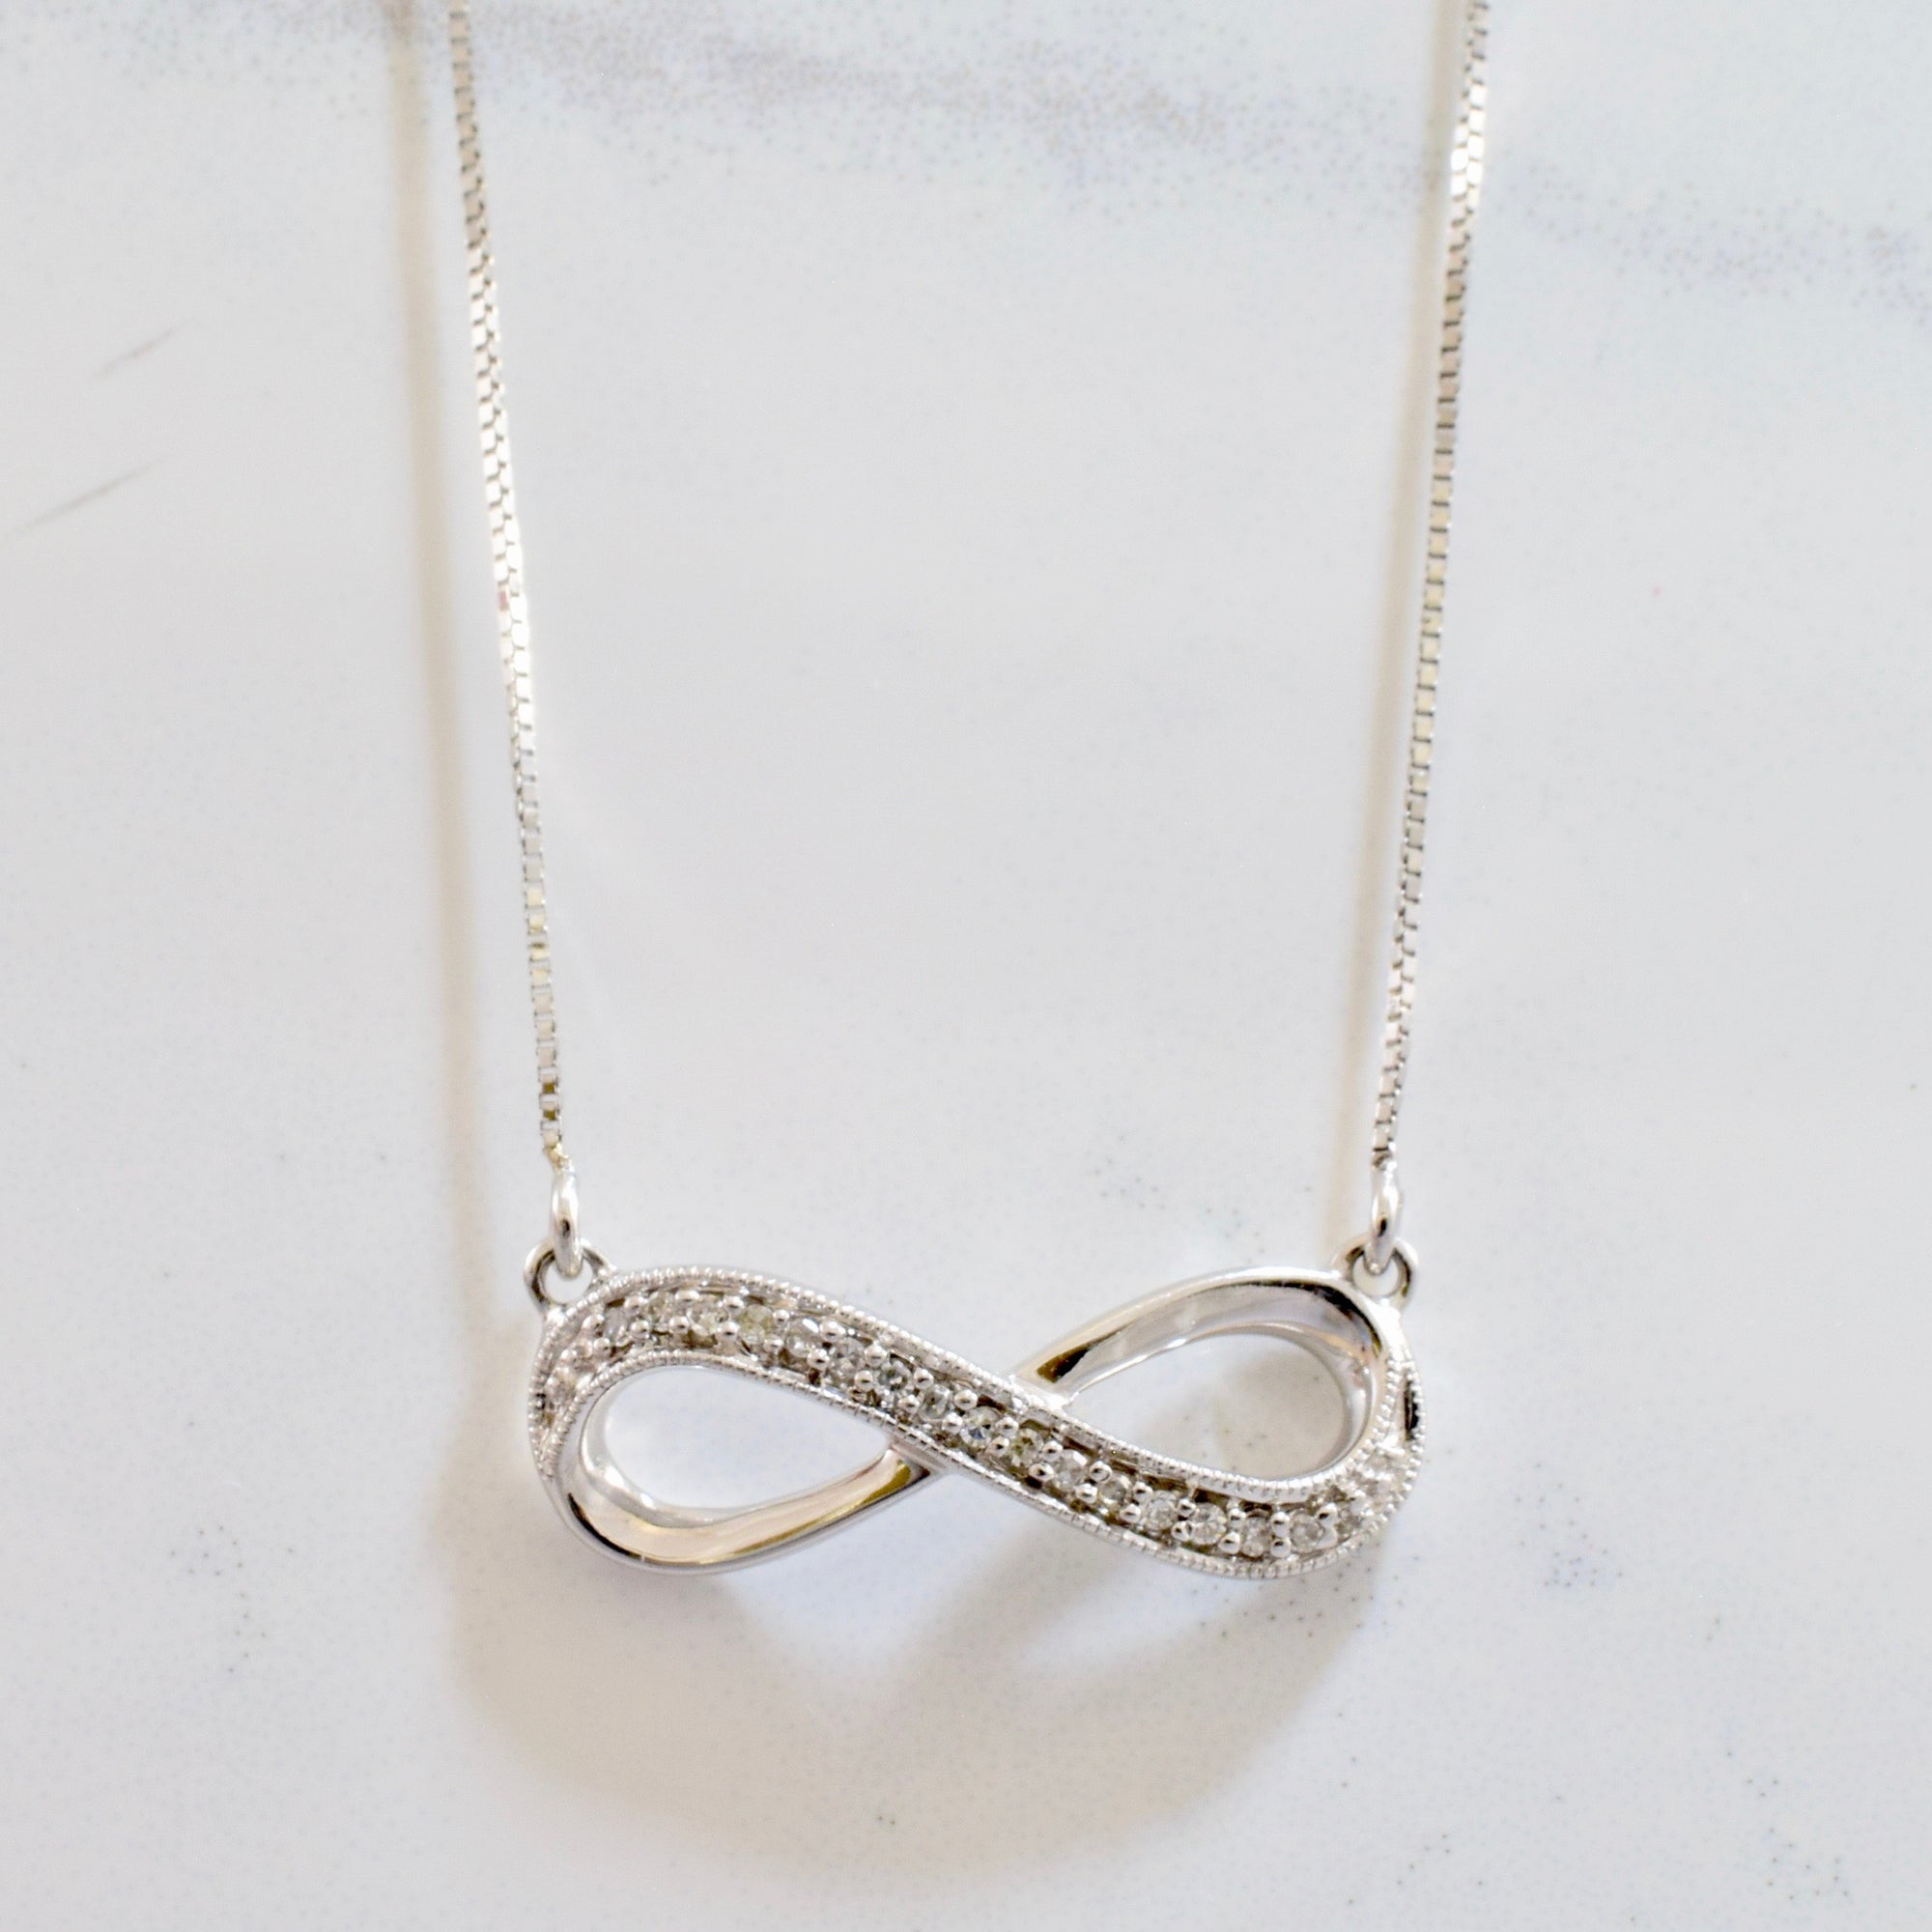 Diamond Infinity Pendant and Necklace | 0.04 ctw SZ 19